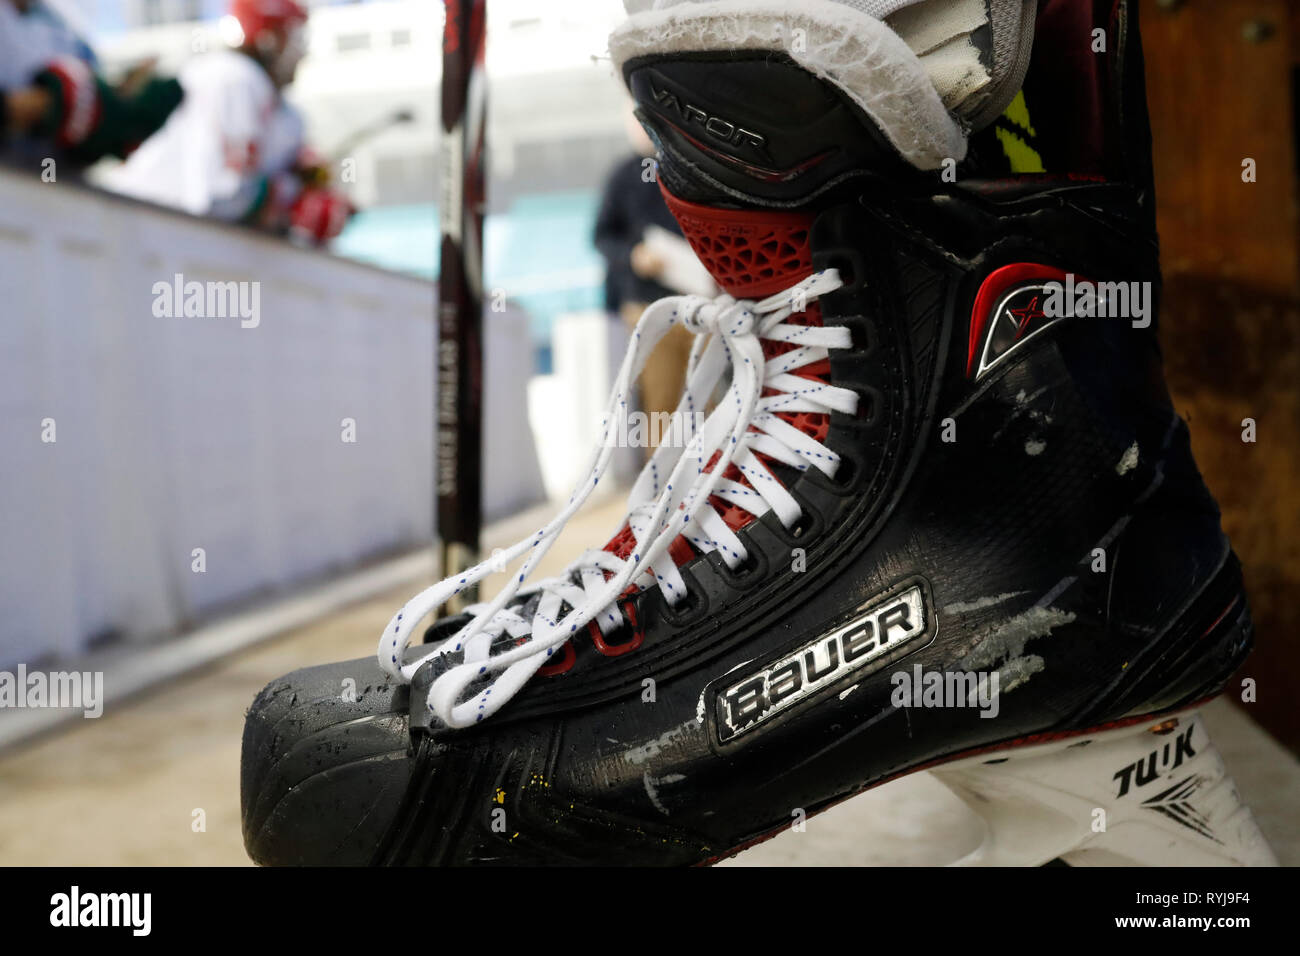 Le hockey sur glace. Dvd et patin à glace. Close-up. Saint-Gervais. La France. Banque D'Images